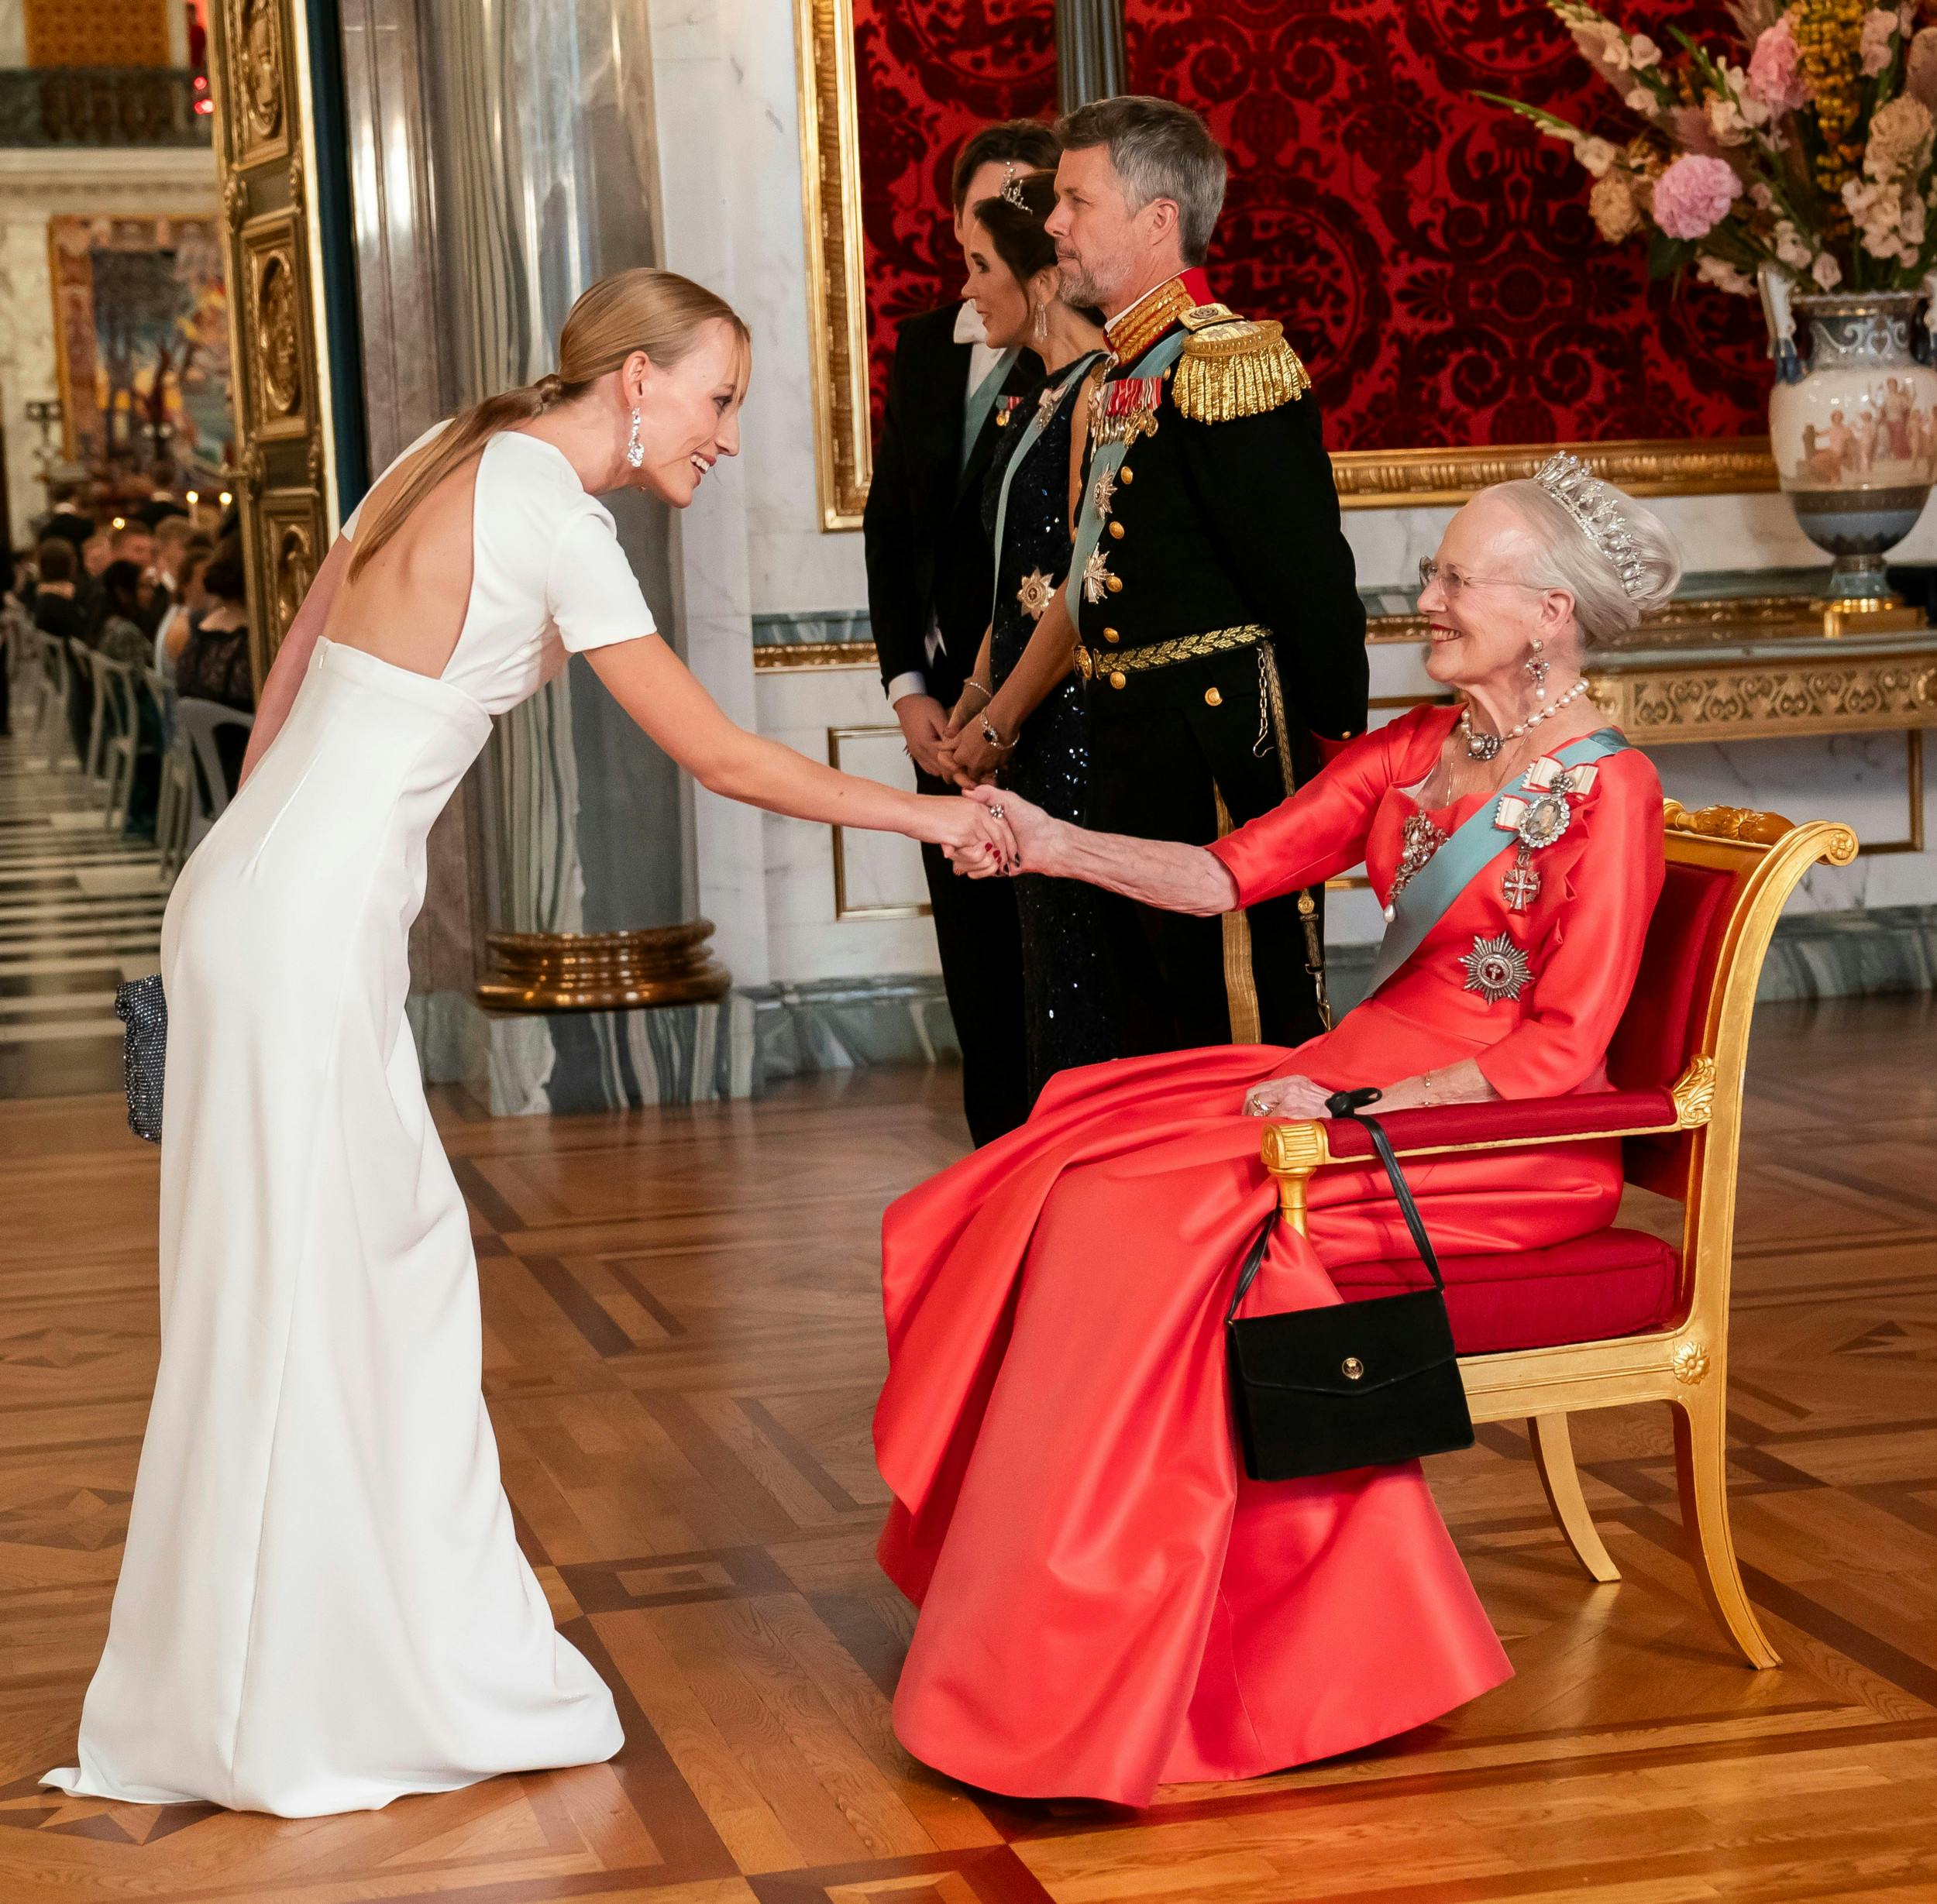 I oktober hilste Flora Ofelia på dronning Margrethe, 83, da hun var inviteret til prins Christians 18-års fødselsdag.